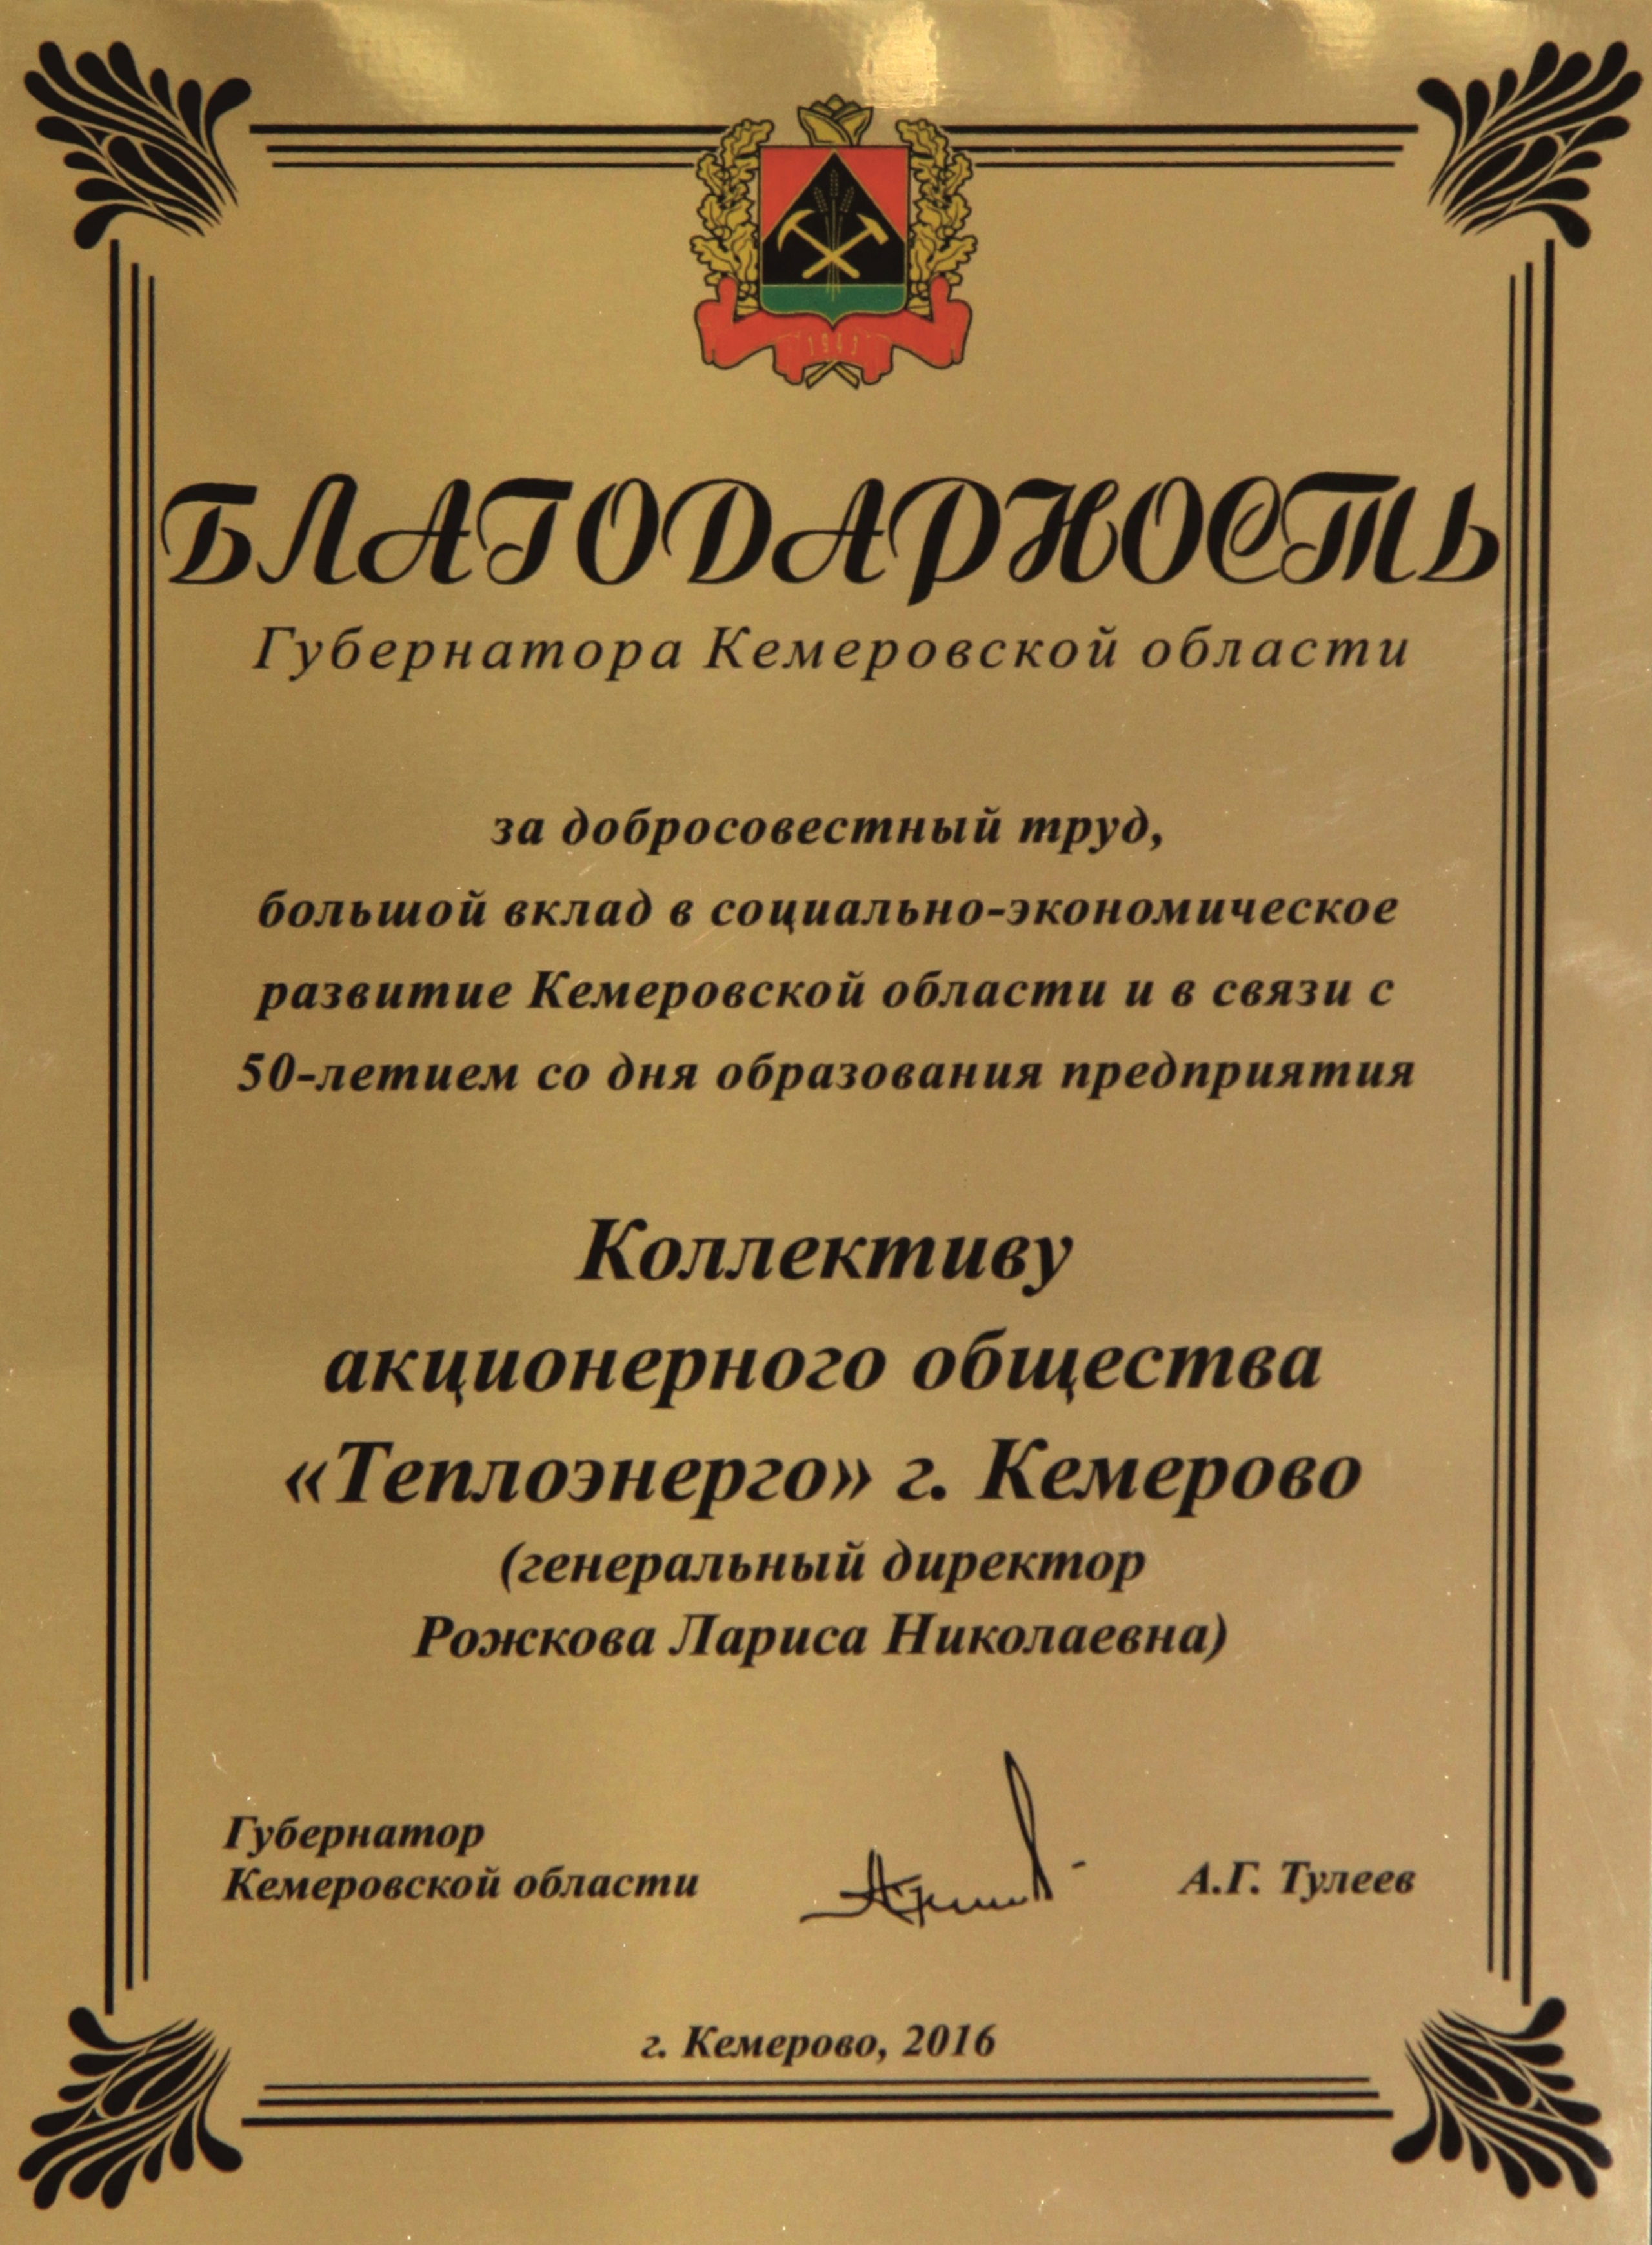 Благодарность от губернатора Кемеровской обл., 2016 г.